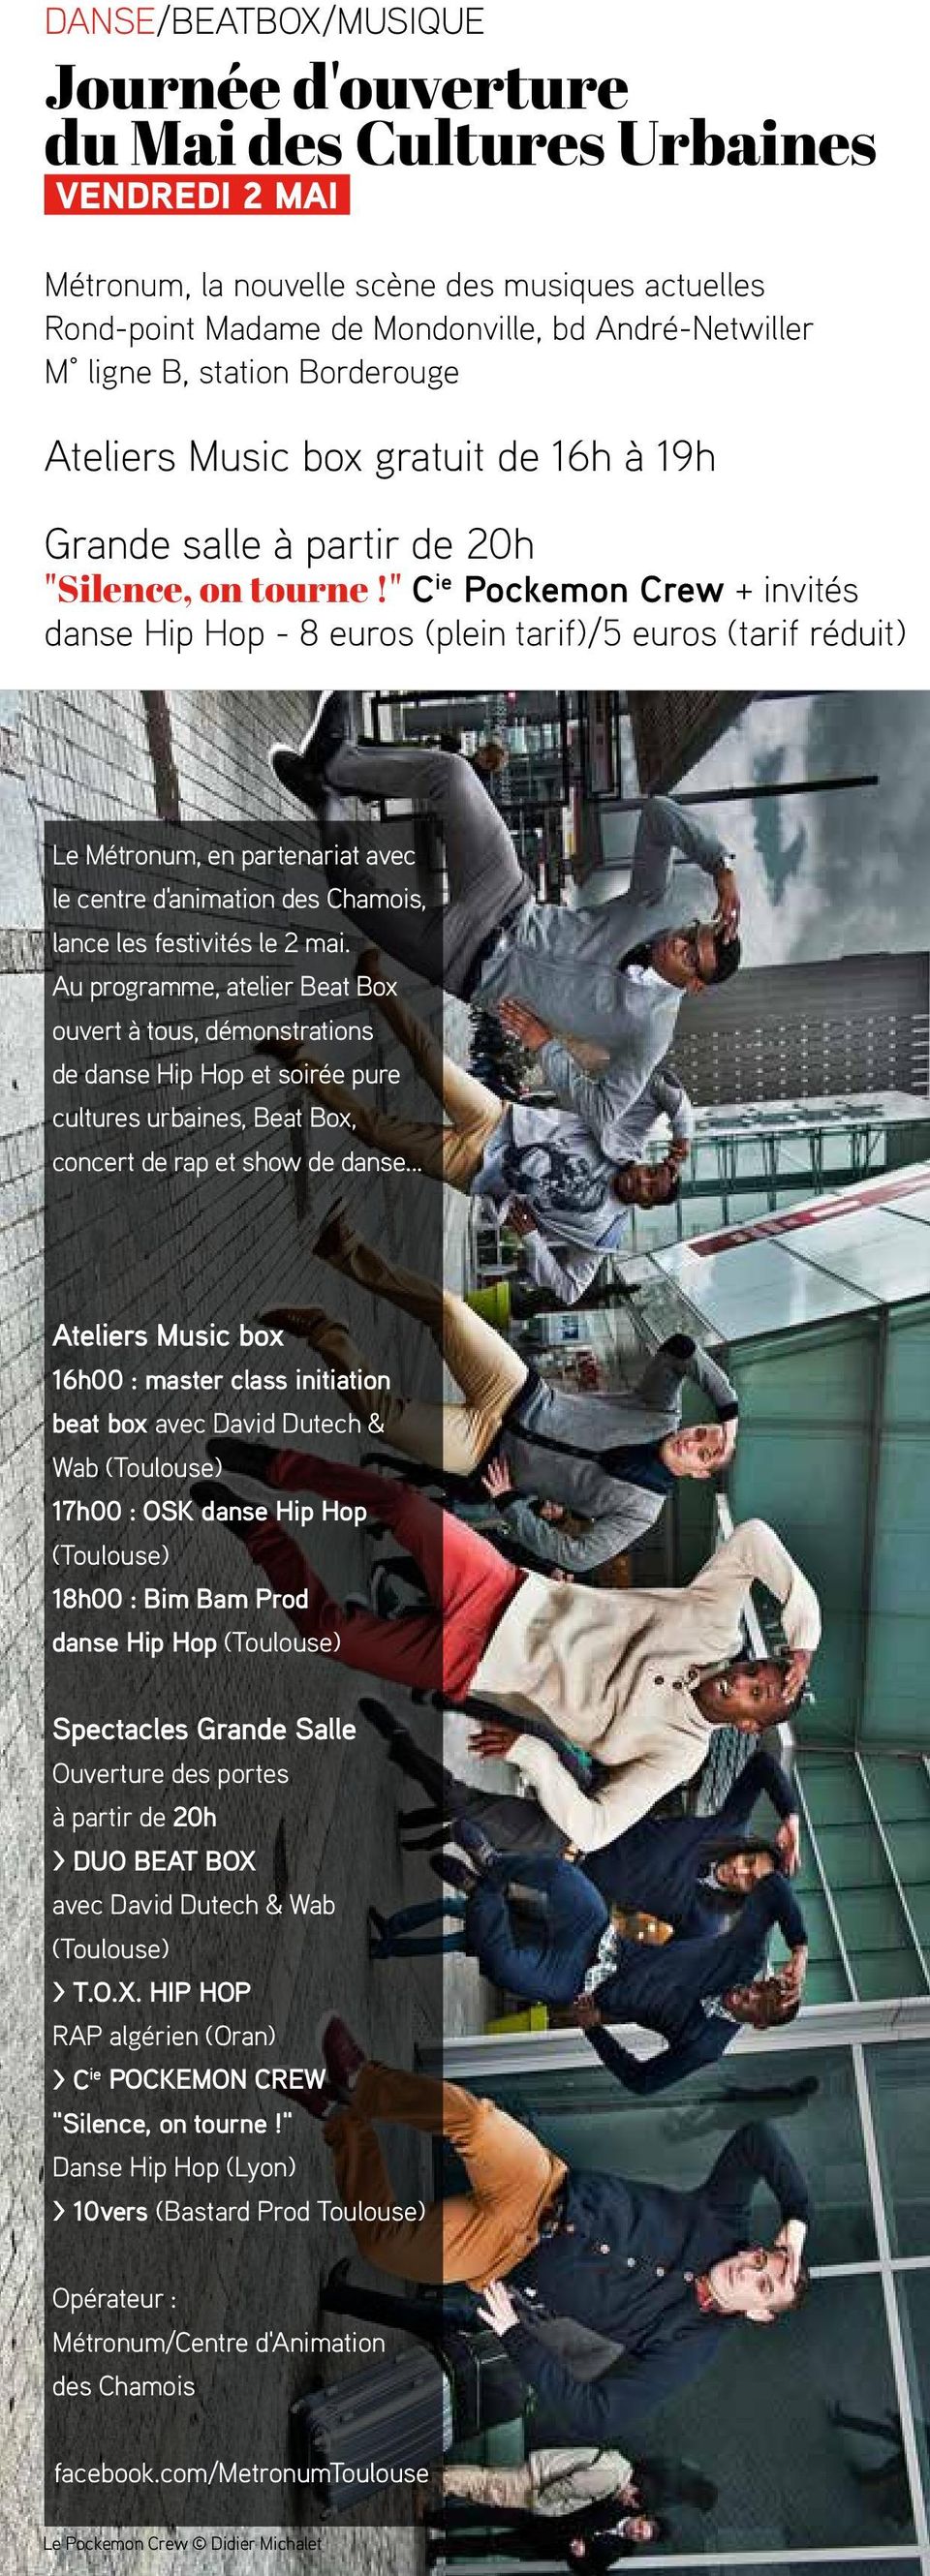 " C ie Pockemon Crew + invités danse Hip Hop - 8 euros (plein tarif)/5 euros (tarif réduit) Le Métronum, en partenariat avec le centre d'animation des Chamois, lance les festivités le 2 mai.